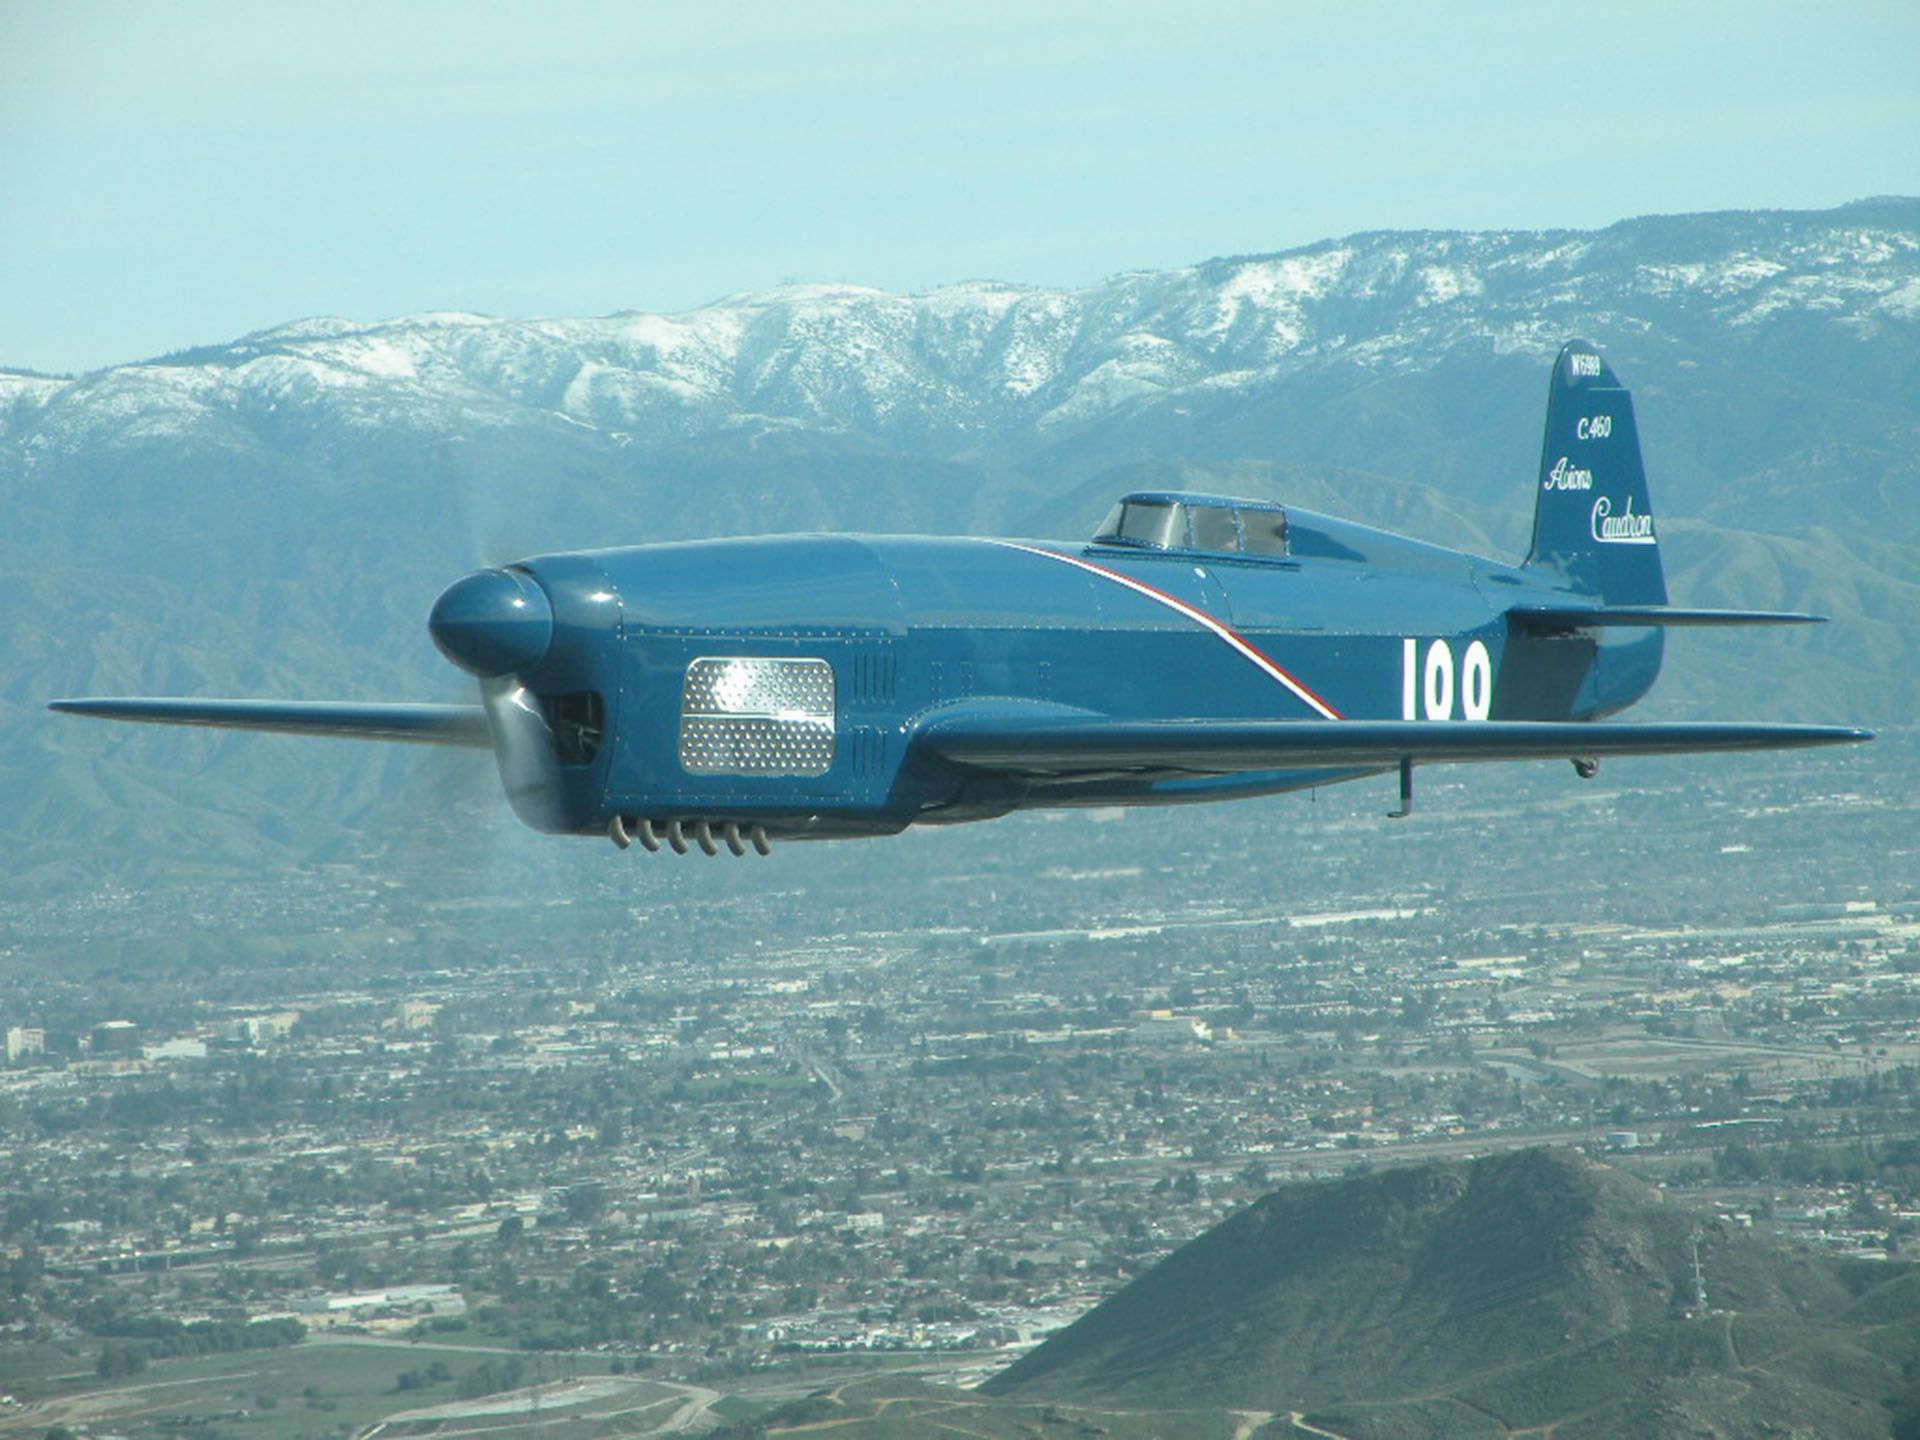 реплика гоночного и рекордного самолета Caudron C-460;